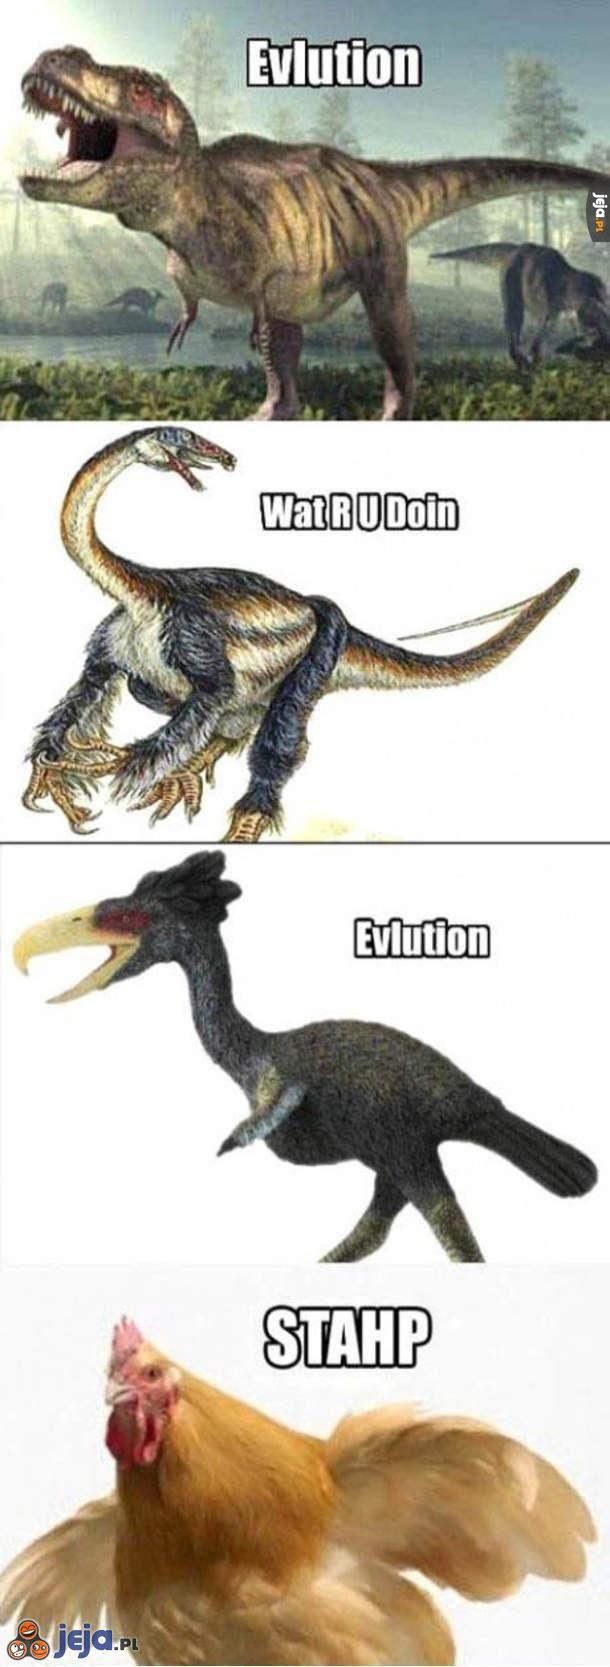 Ewolucjo, przestań!